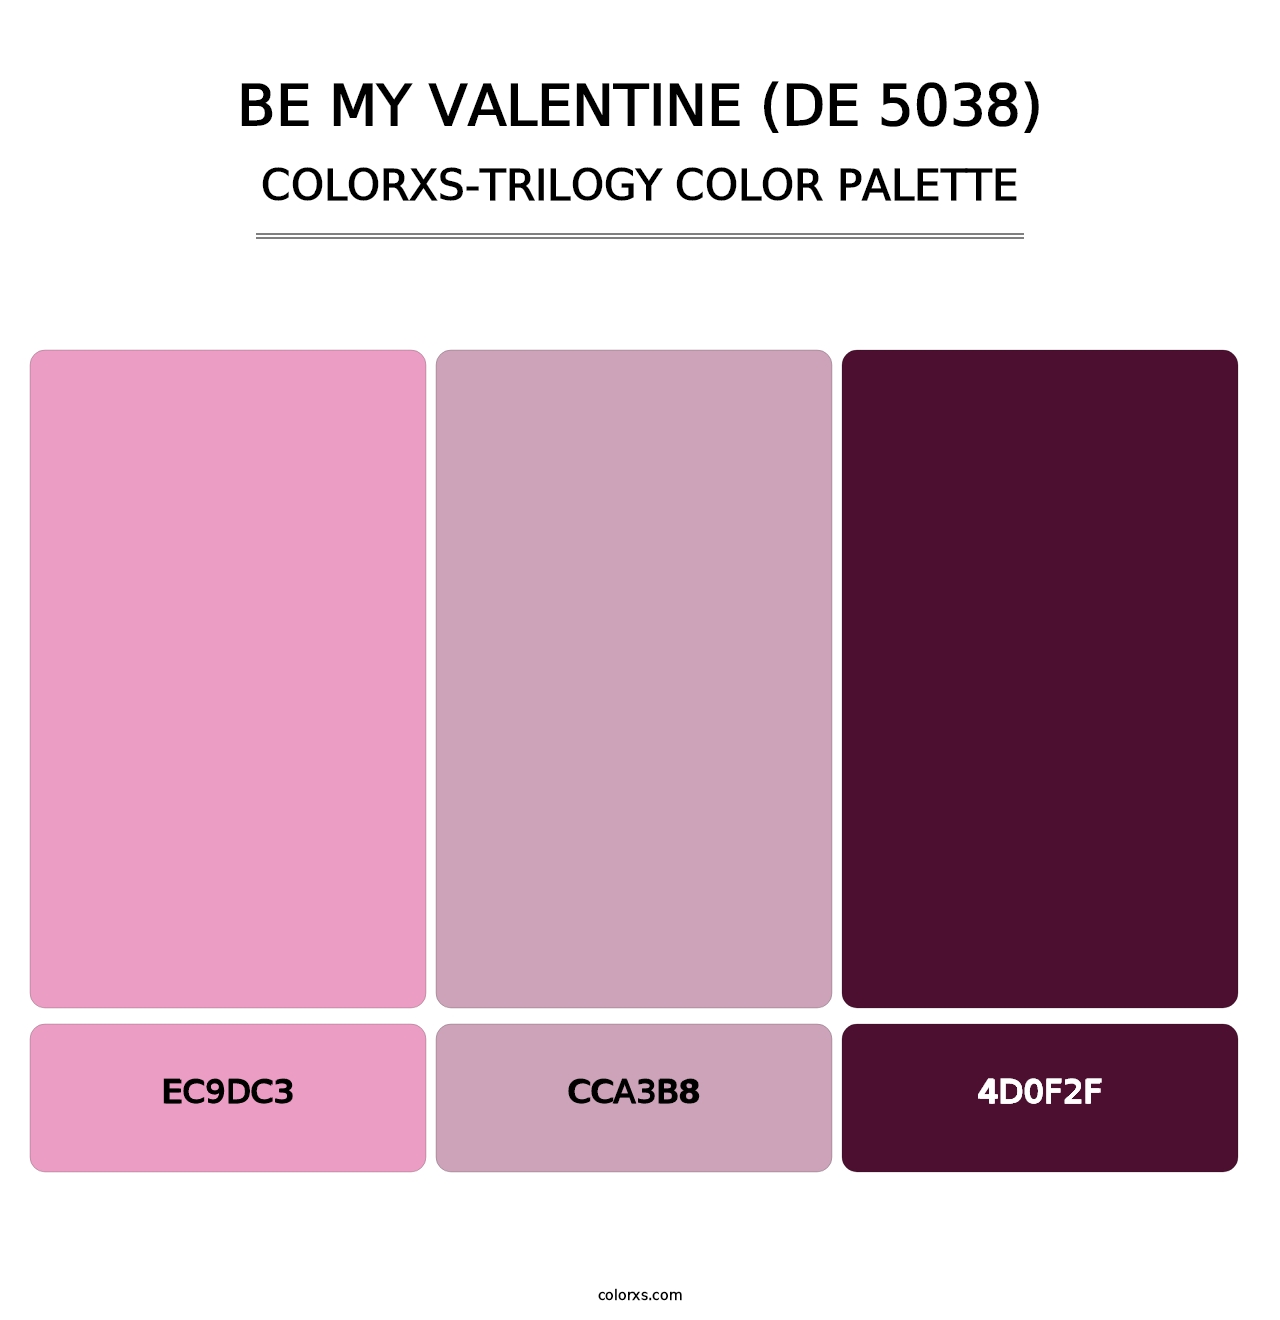 Be My Valentine (DE 5038) - Colorxs Trilogy Palette